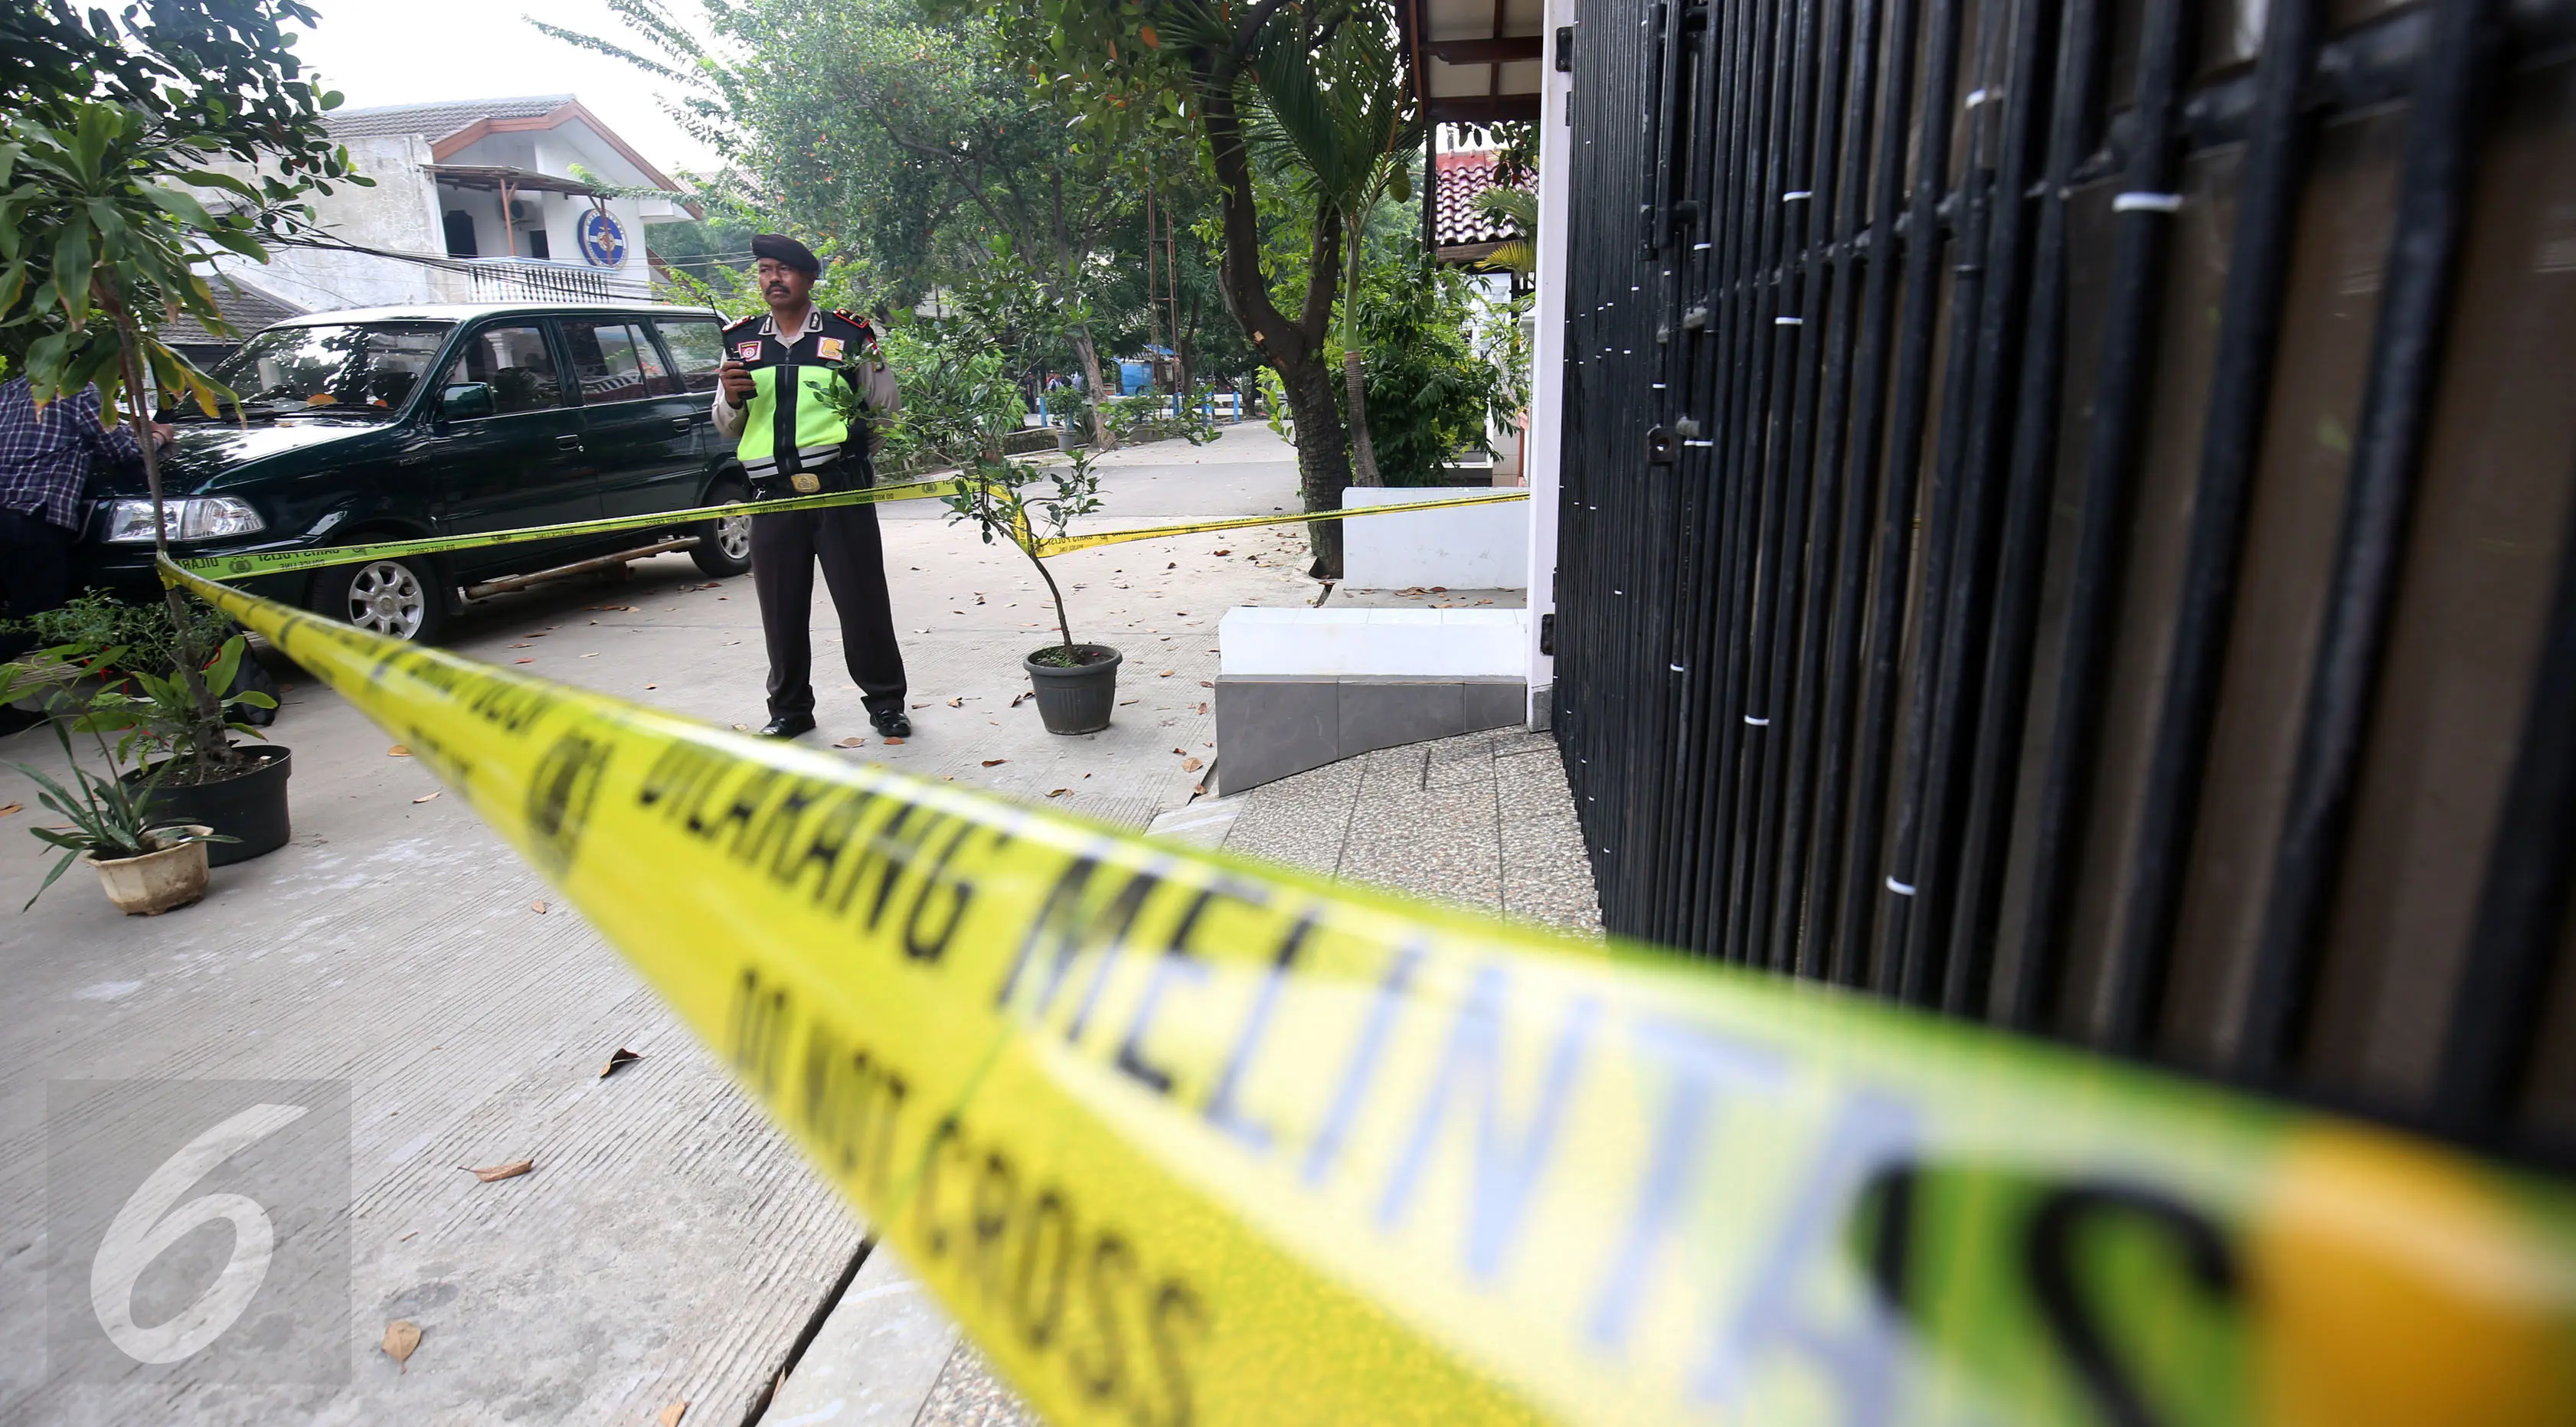 Polisi berjaga di tempat Penyidik KPK Novel Baswedan diserang oleh orang tak dikenal, Jakarta, Selasa (11/4). Setelah insiden penyerangan tersebut, Kapolri perintahkan Rumah Novel Baswedan dijaga. (Liputan6.com/JohanTallo)